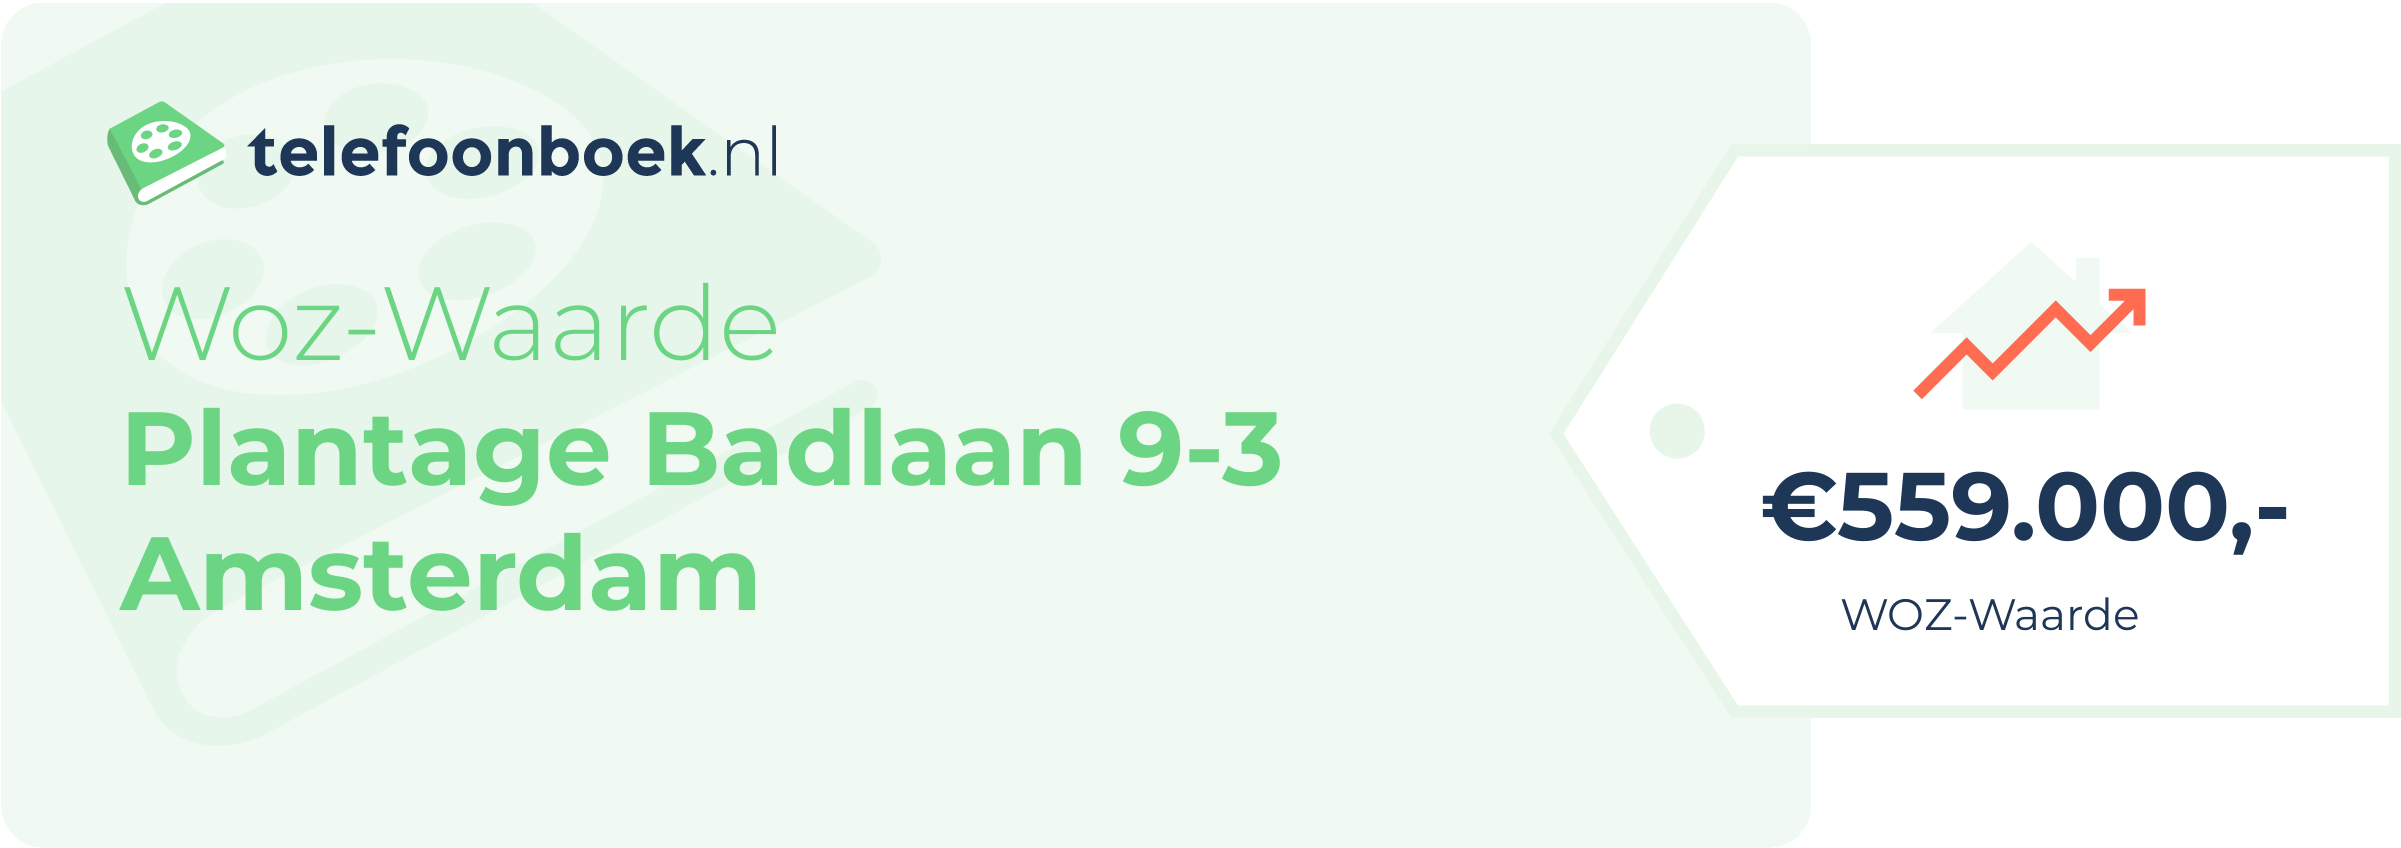 WOZ-waarde Plantage Badlaan 9-3 Amsterdam